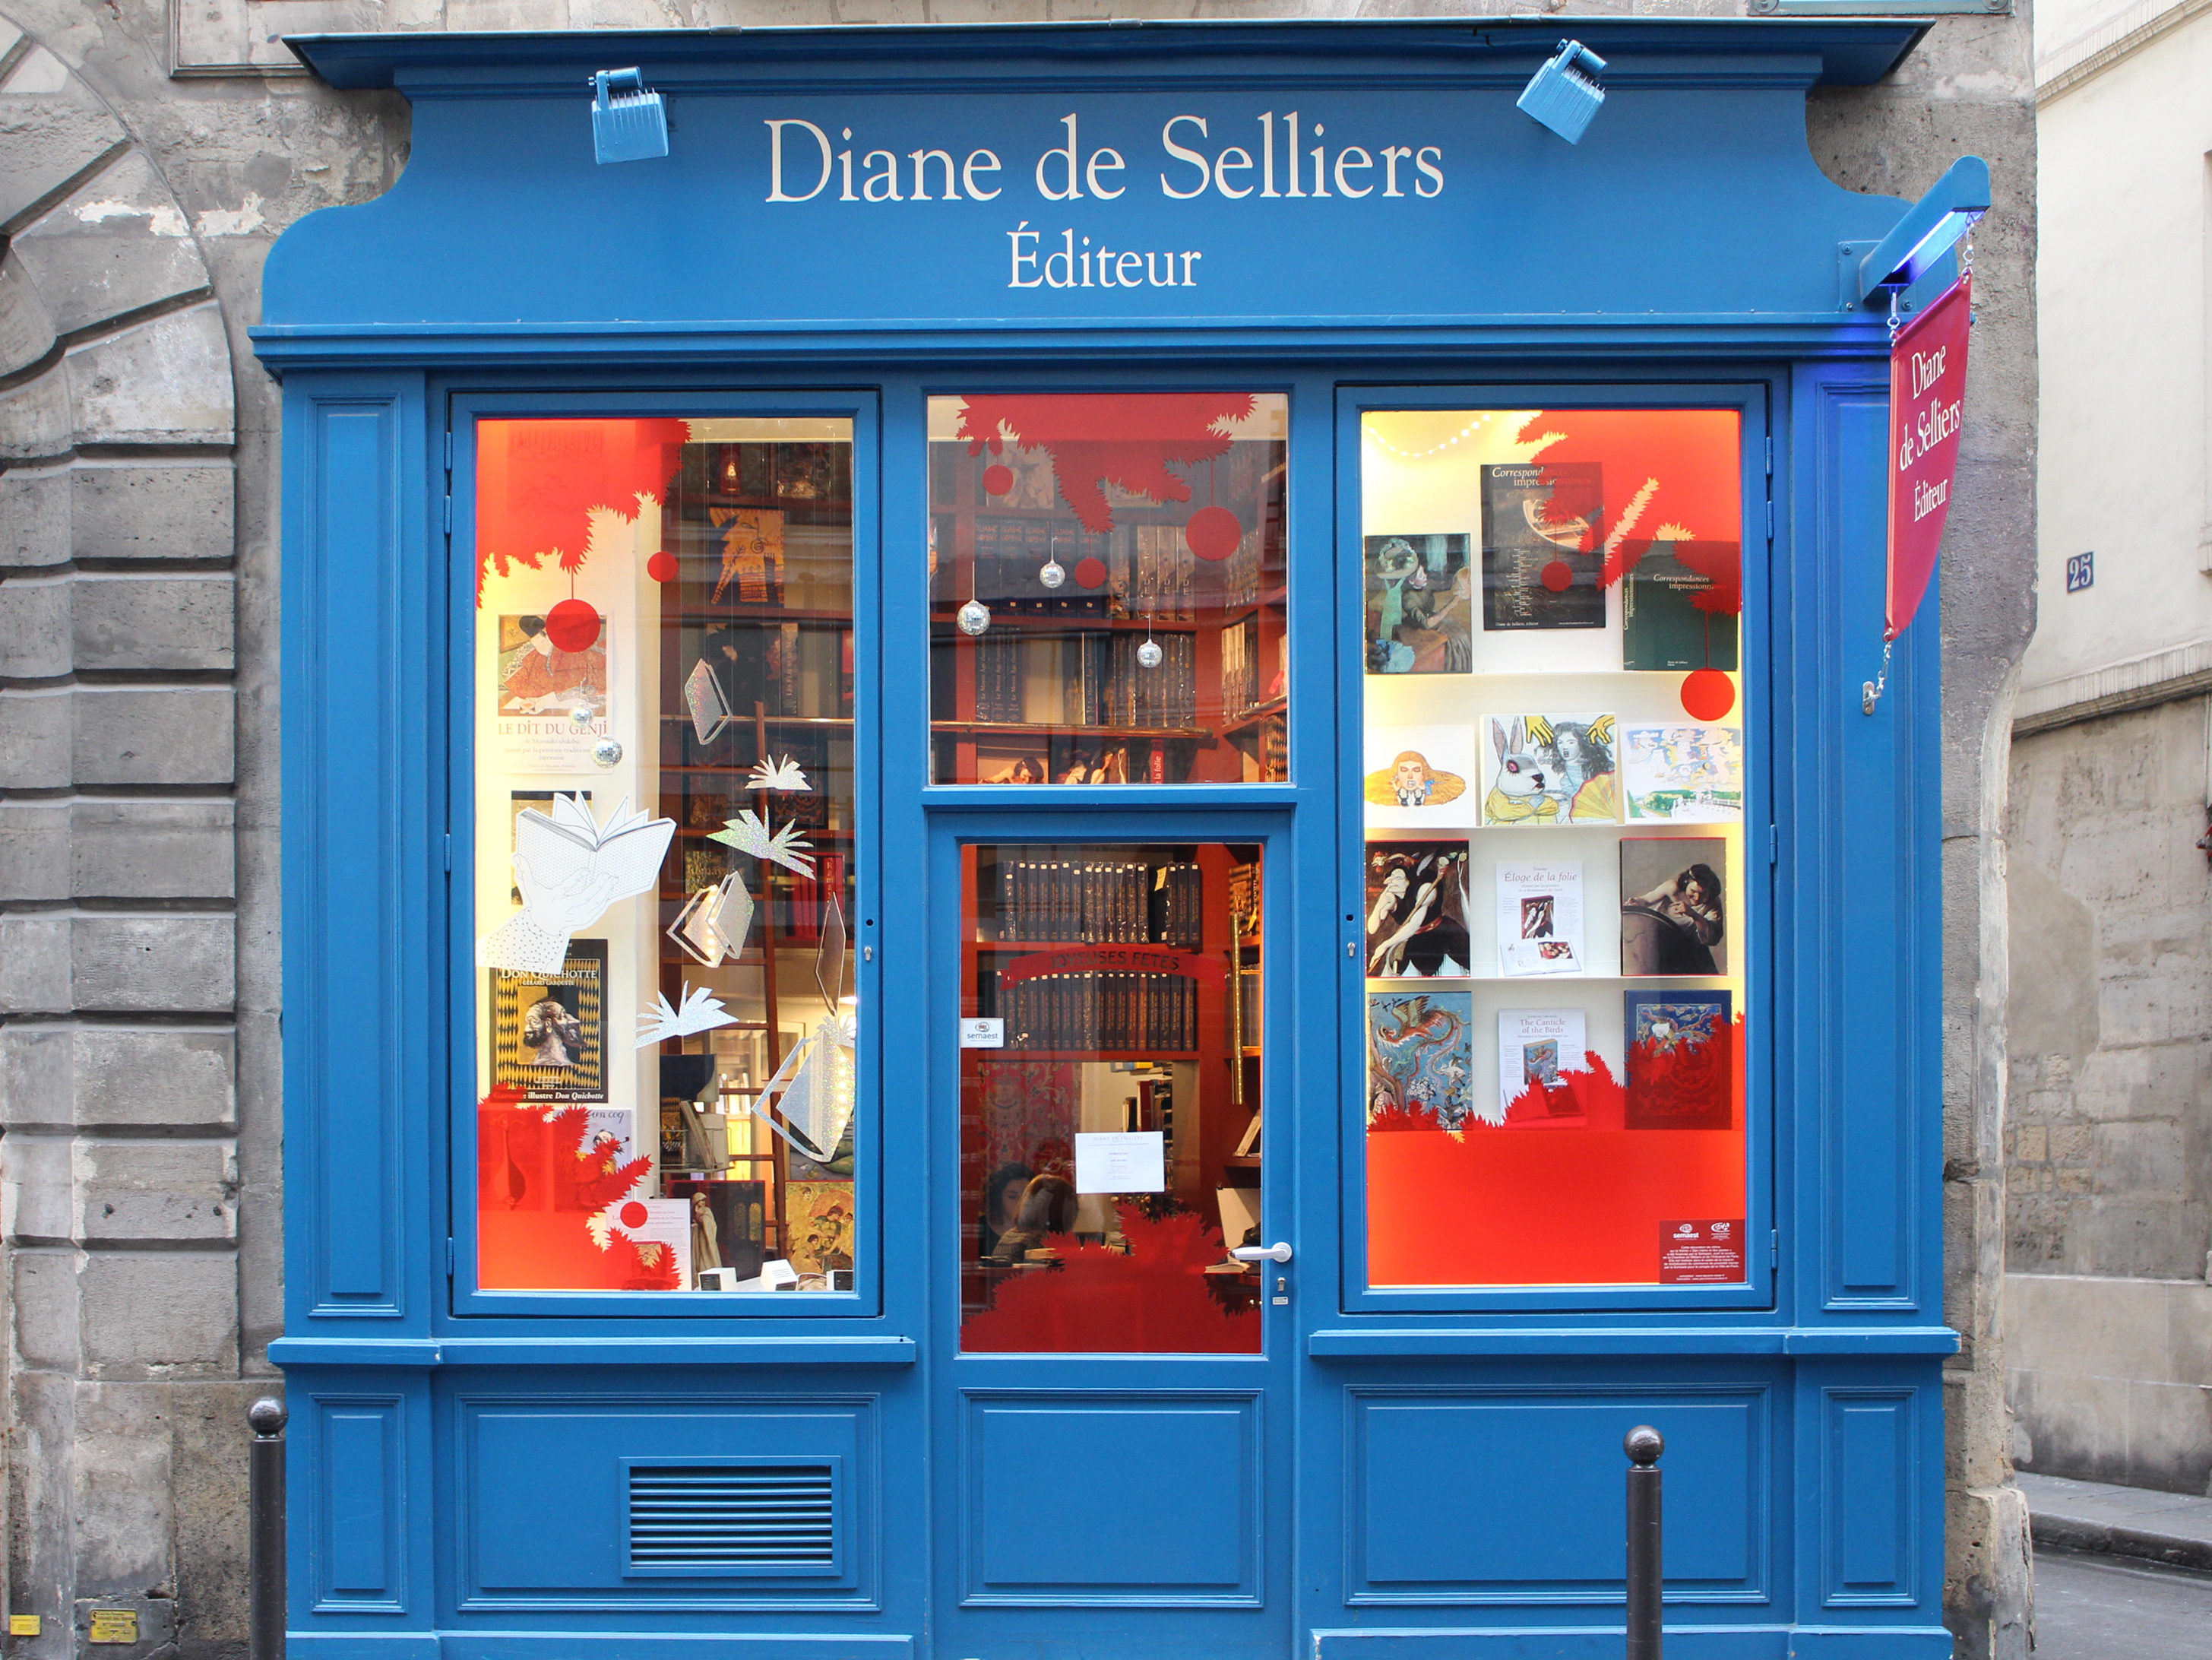 Fêtez les Journées du Patrimoine 2019 aux Éditions Diane de Selliers !